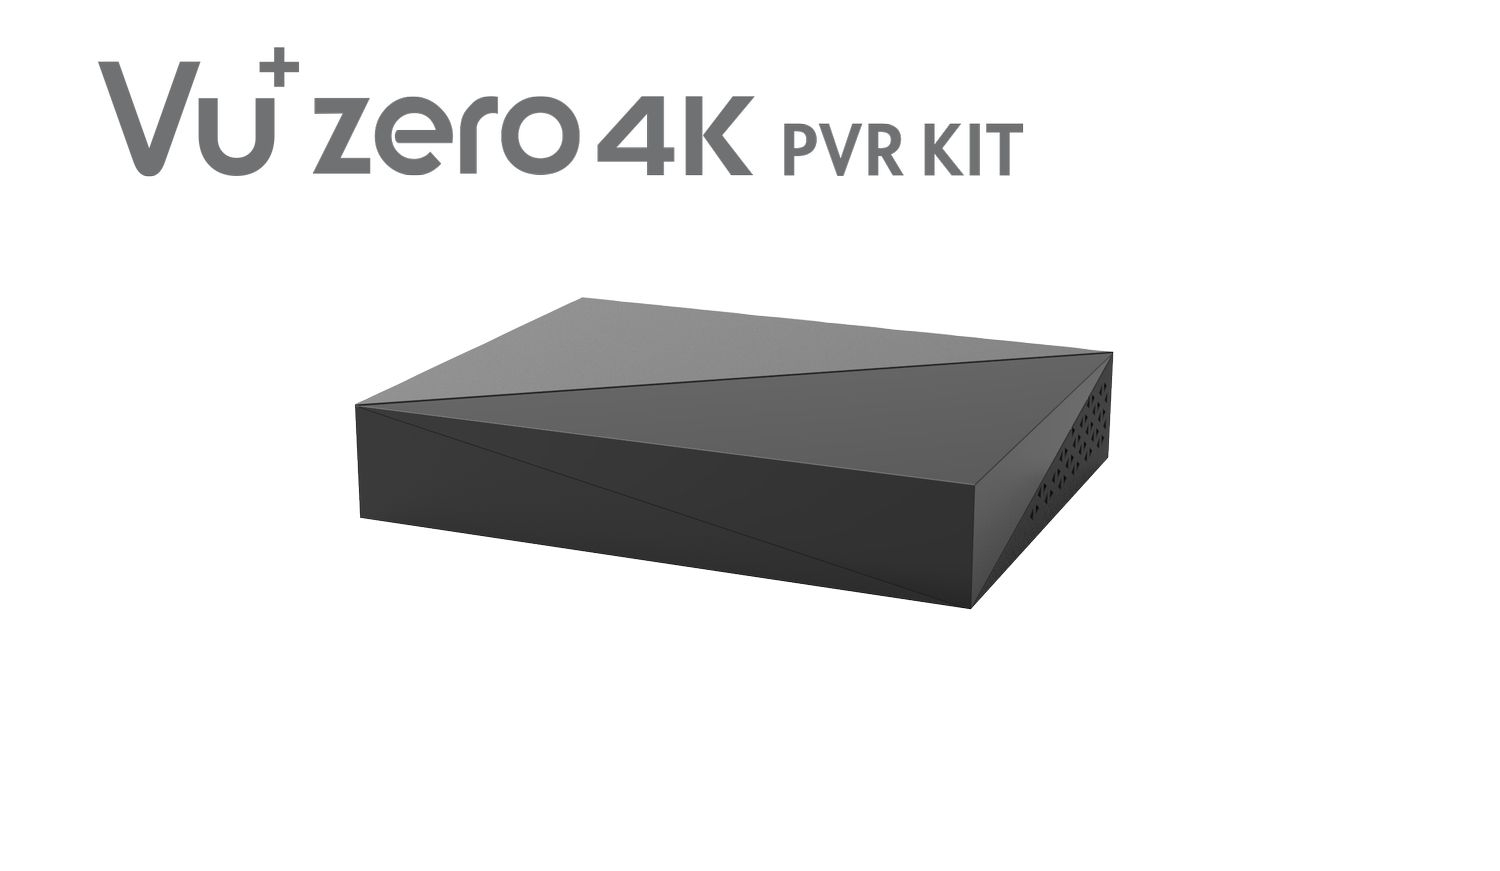 VU+Zero 4K PVR Kit ohne HDD